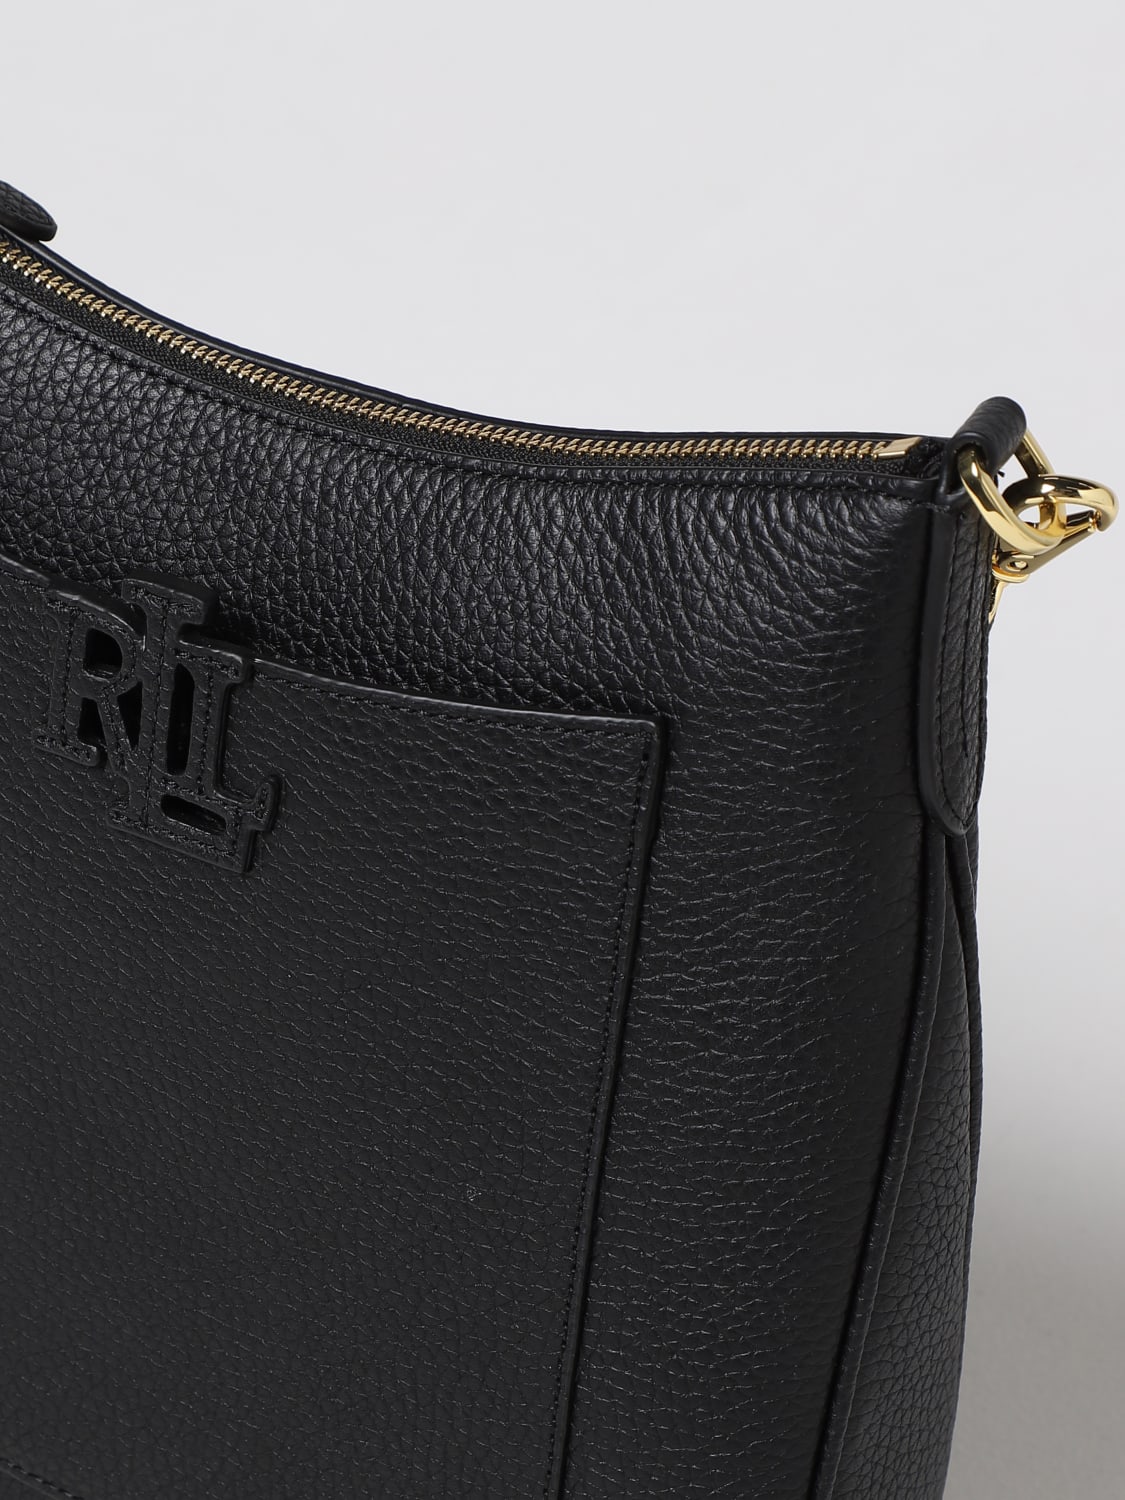 Lauren Ralph Lauren handbag for woman